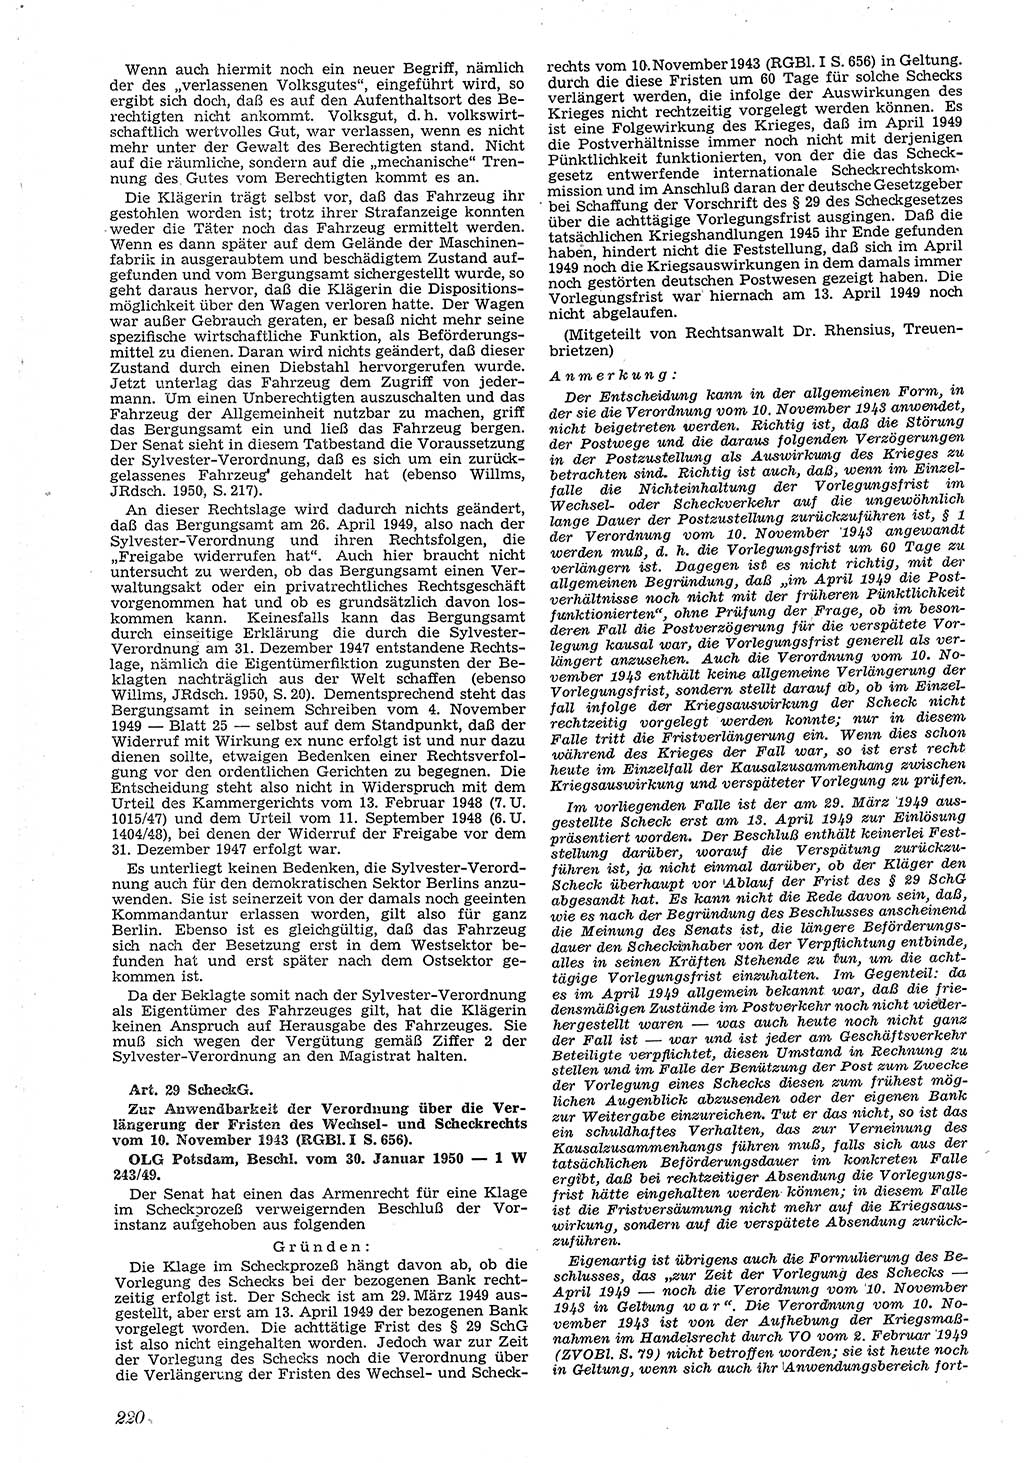 Neue Justiz (NJ), Zeitschrift für Recht und Rechtswissenschaft [Deutsche Demokratische Republik (DDR)], 4. Jahrgang 1950, Seite 220 (NJ DDR 1950, S. 220)